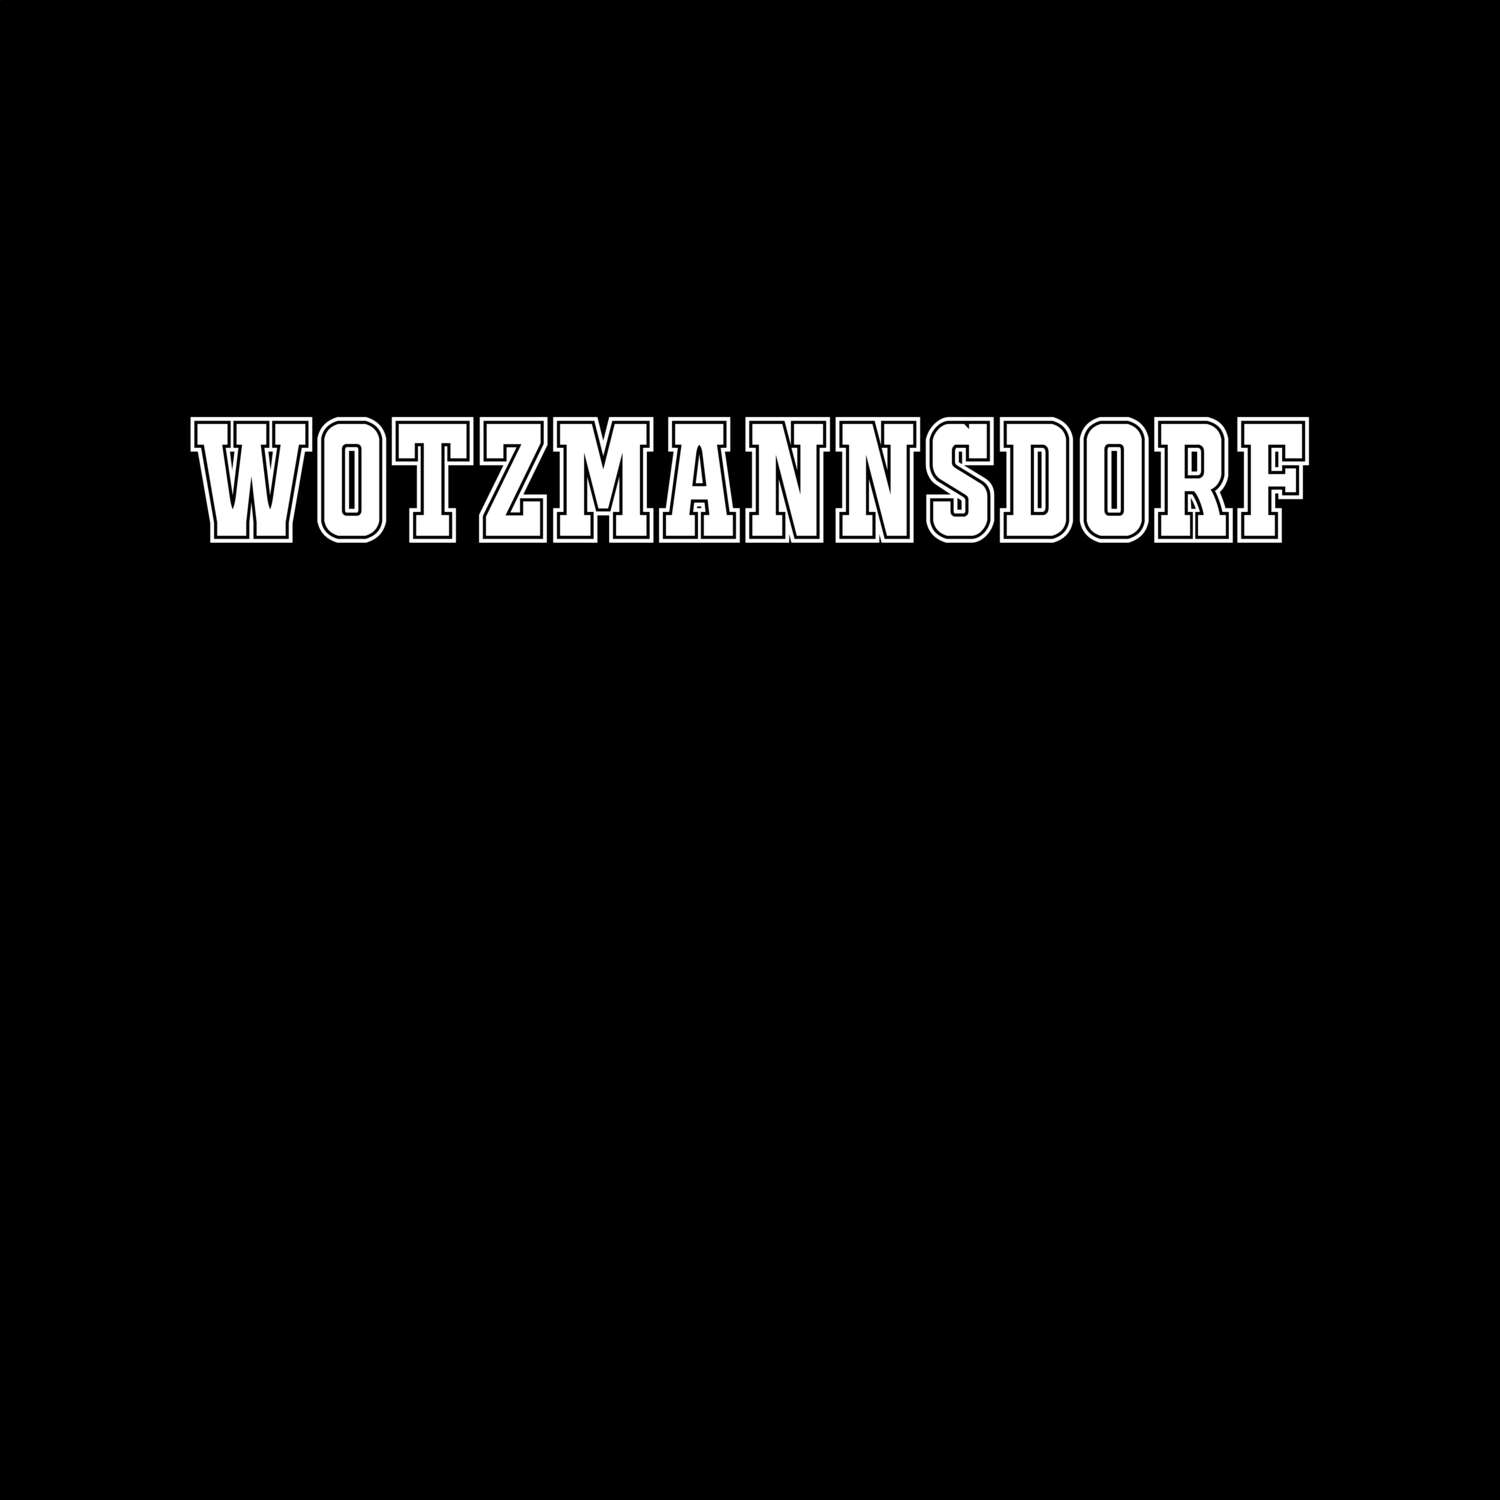 Wotzmannsdorf T-Shirt »Classic«